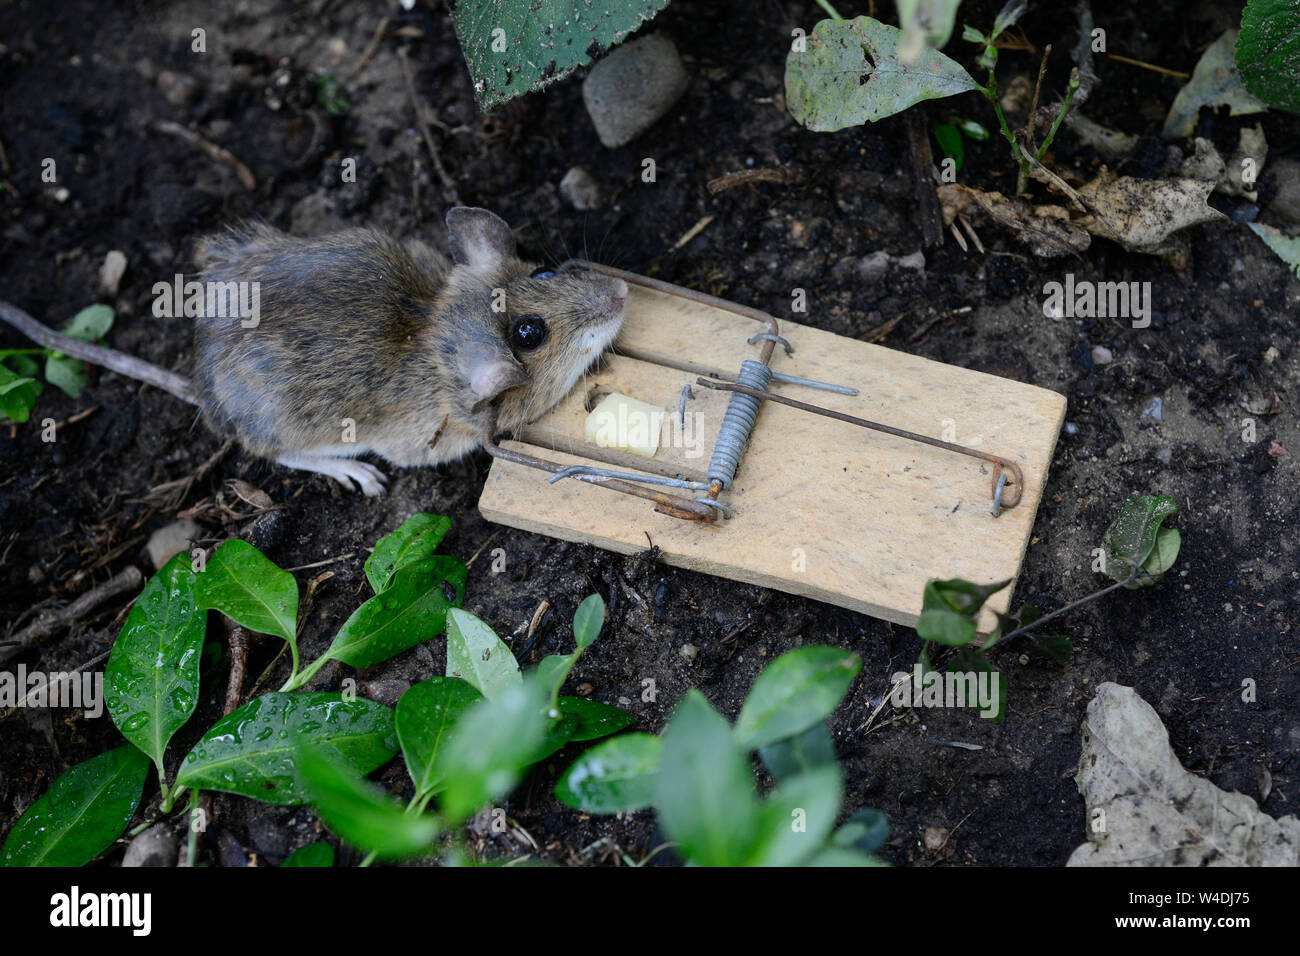 Alemania, ratón muerto en la trampa de ratón con un trozo de queso / Deutschland, tote Maus mit Käse in der Mausefalle Foto de stock